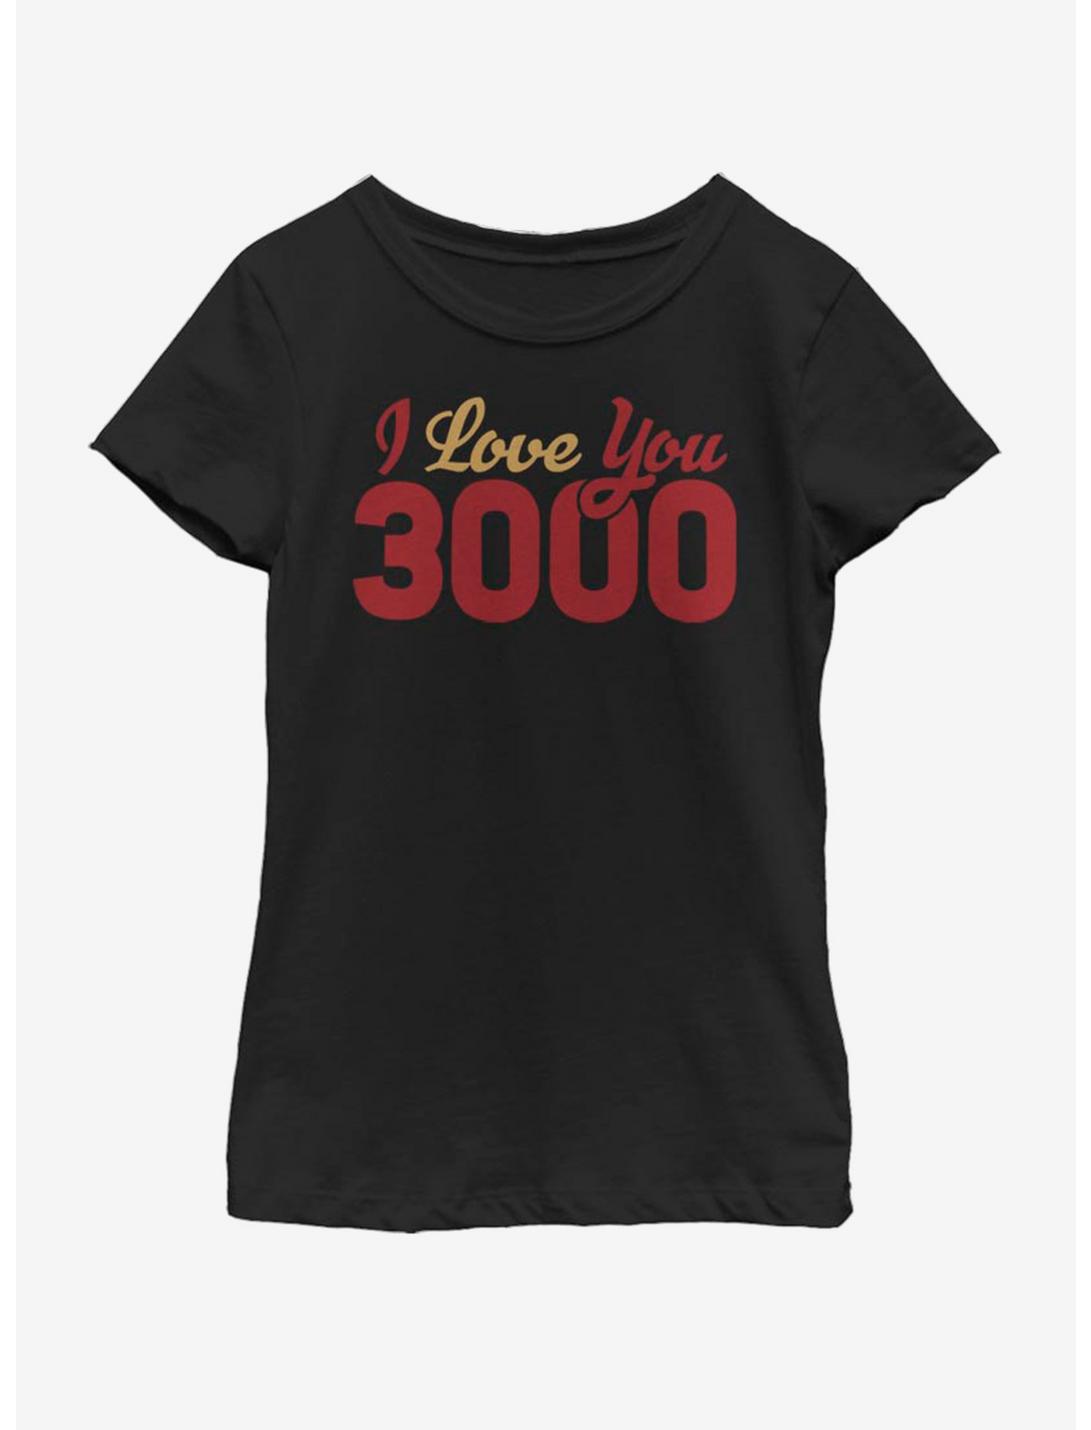 Marvel Avengers: Endgame 3000 Loves Youth Girls T-Shirt, BLACK, hi-res